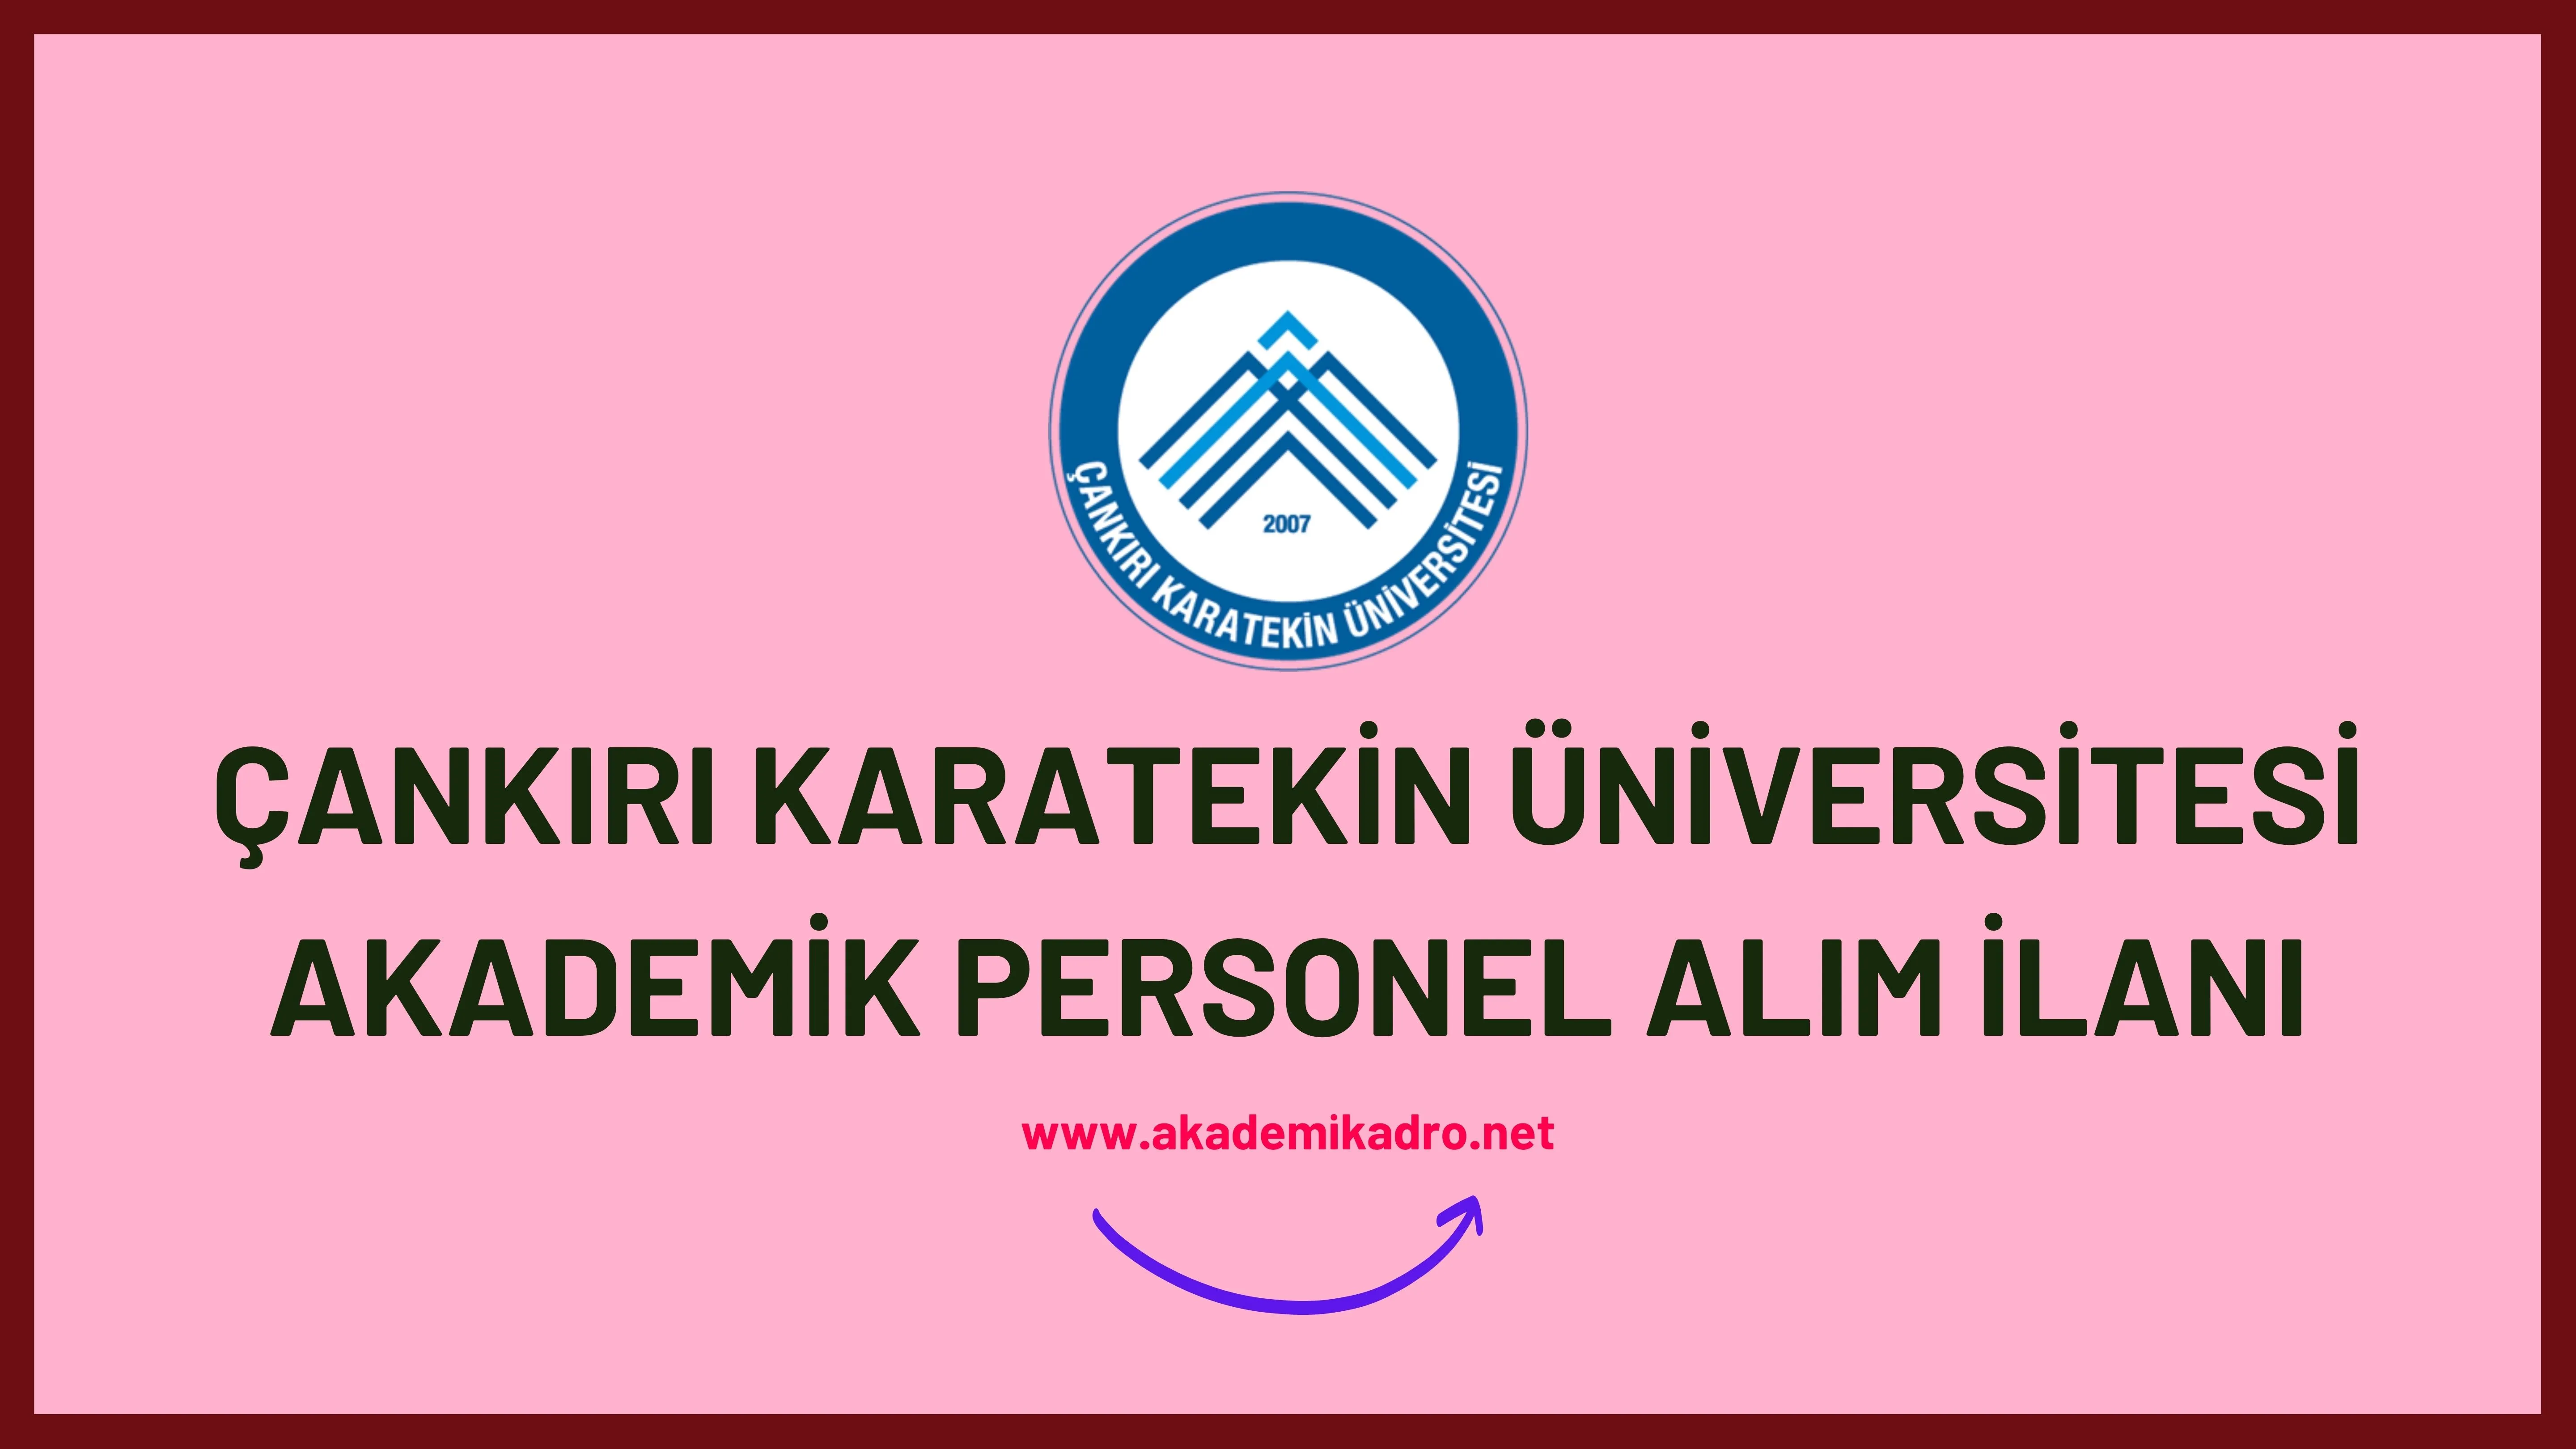 Çankırı Karatekin Üniversitesi 17 akademik personel alacak